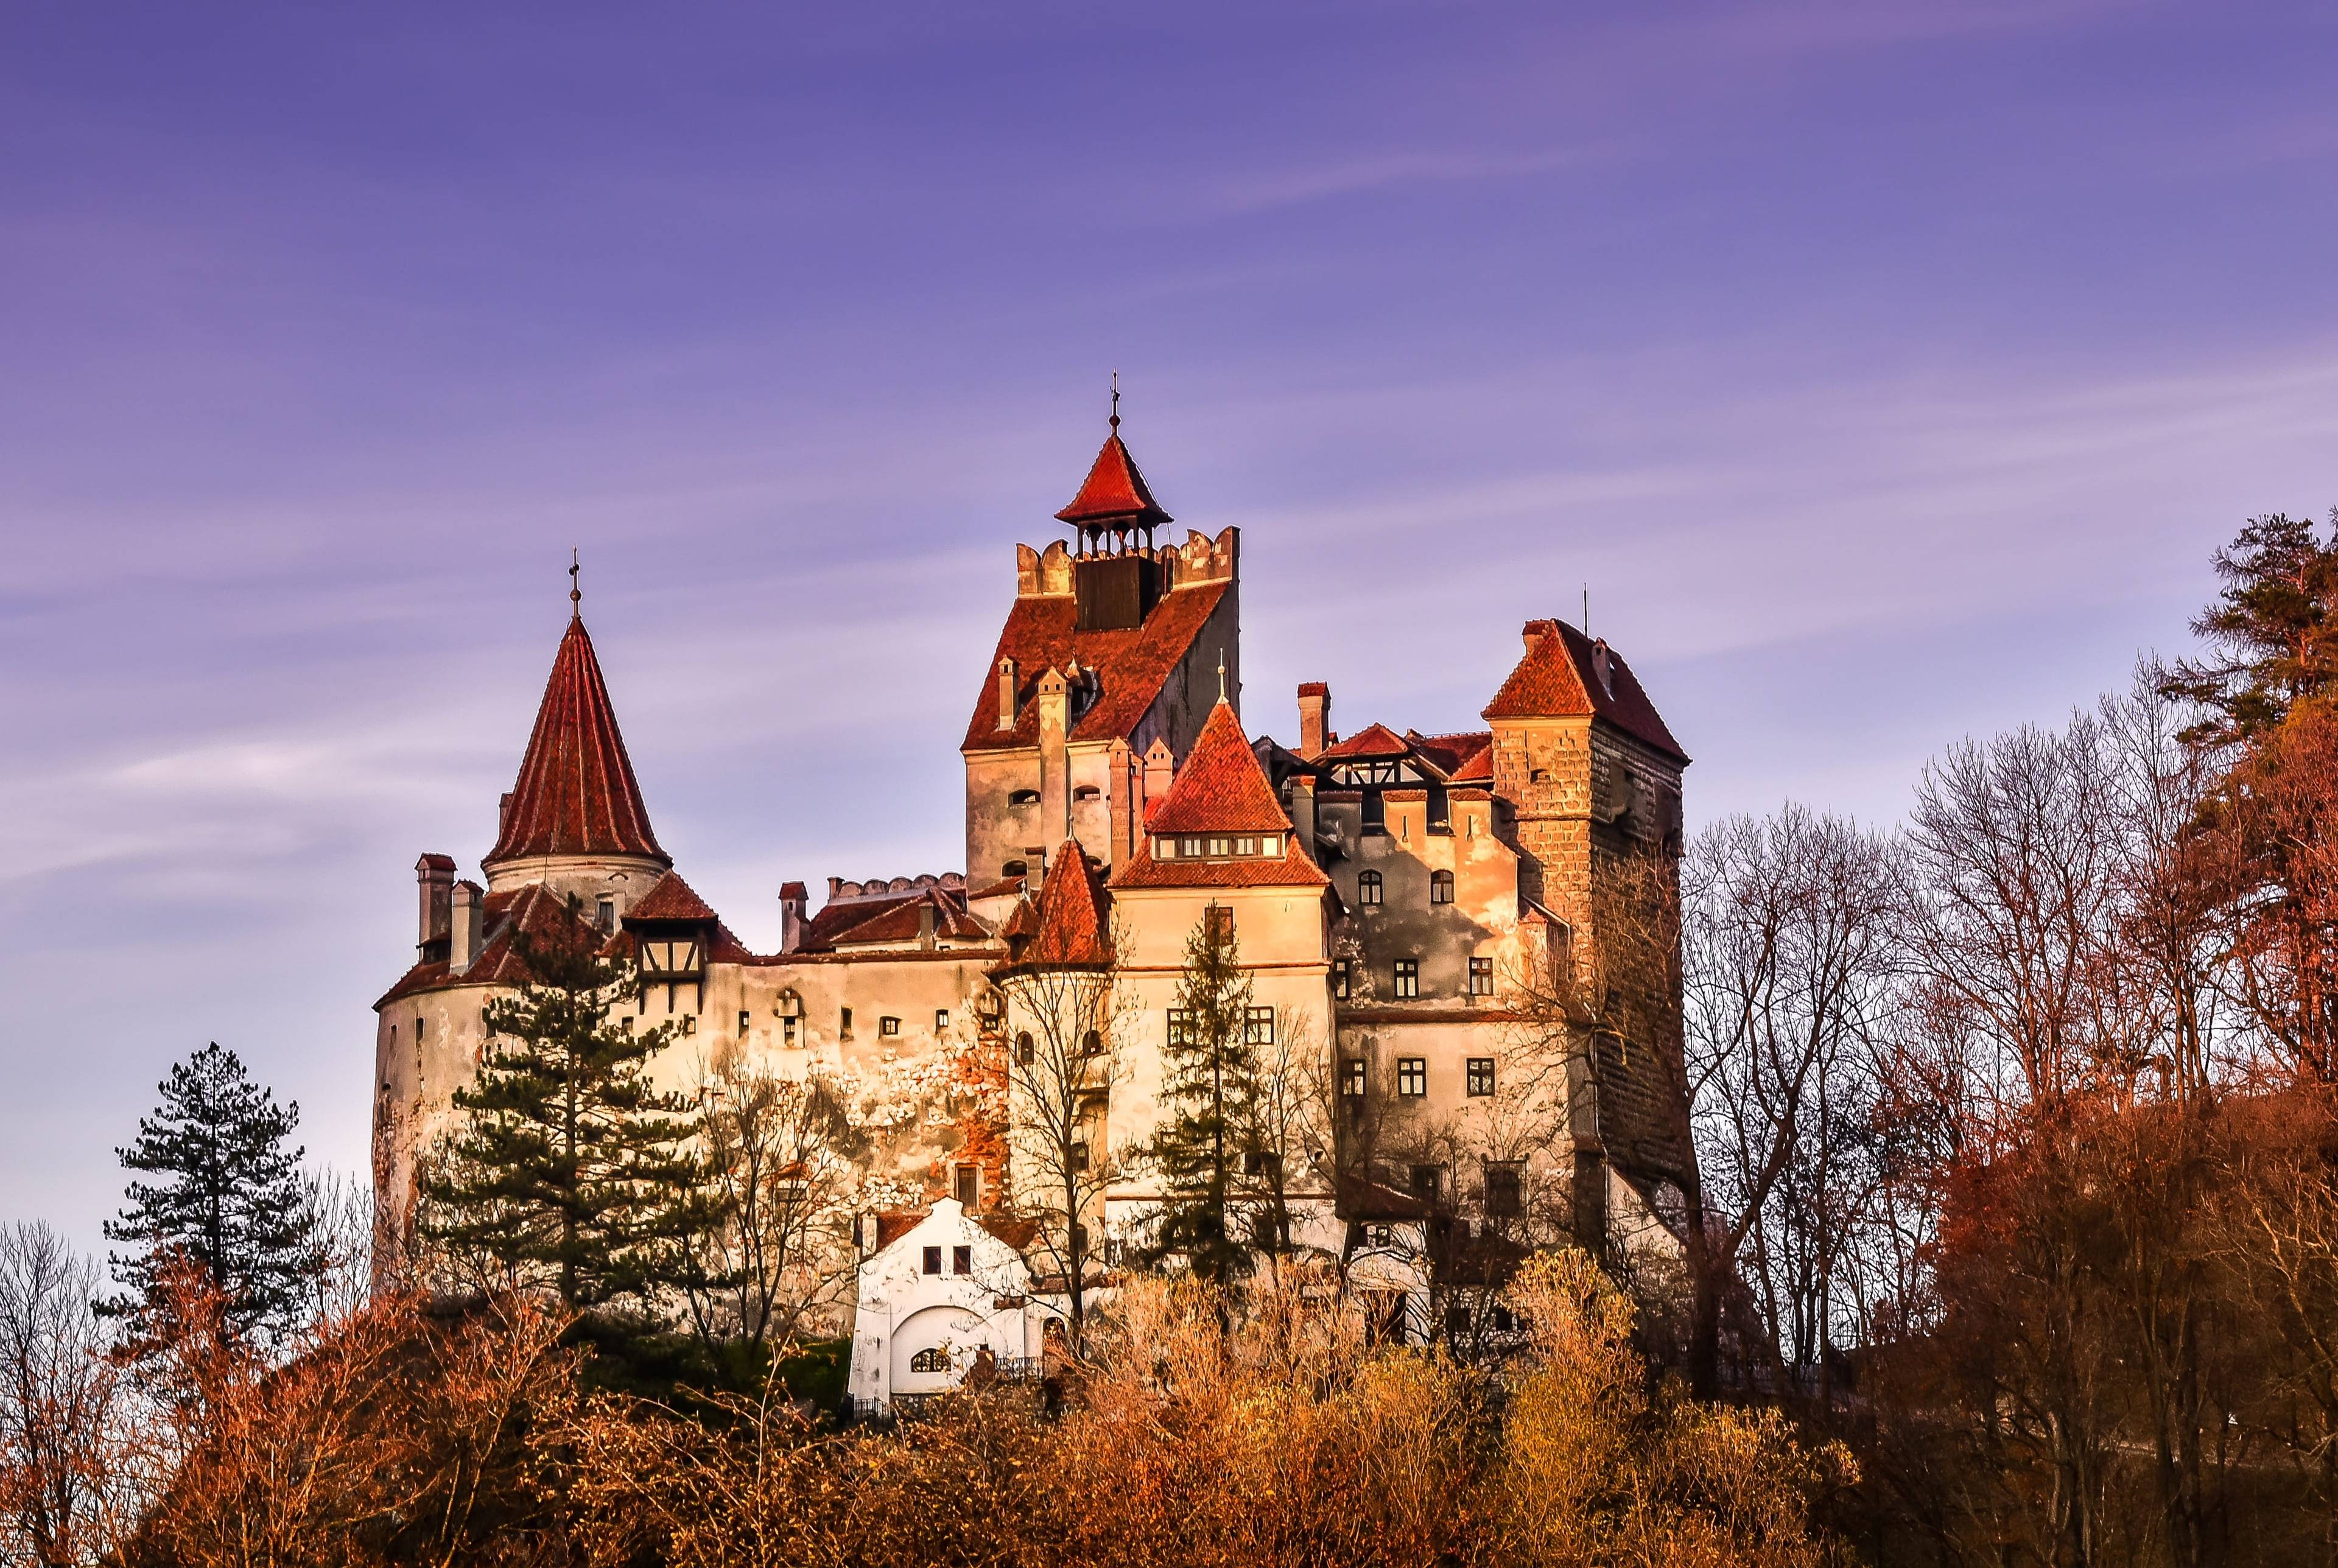 Un viaggio fantastico attraverso la splendida Romania fino alla patria di Dracula